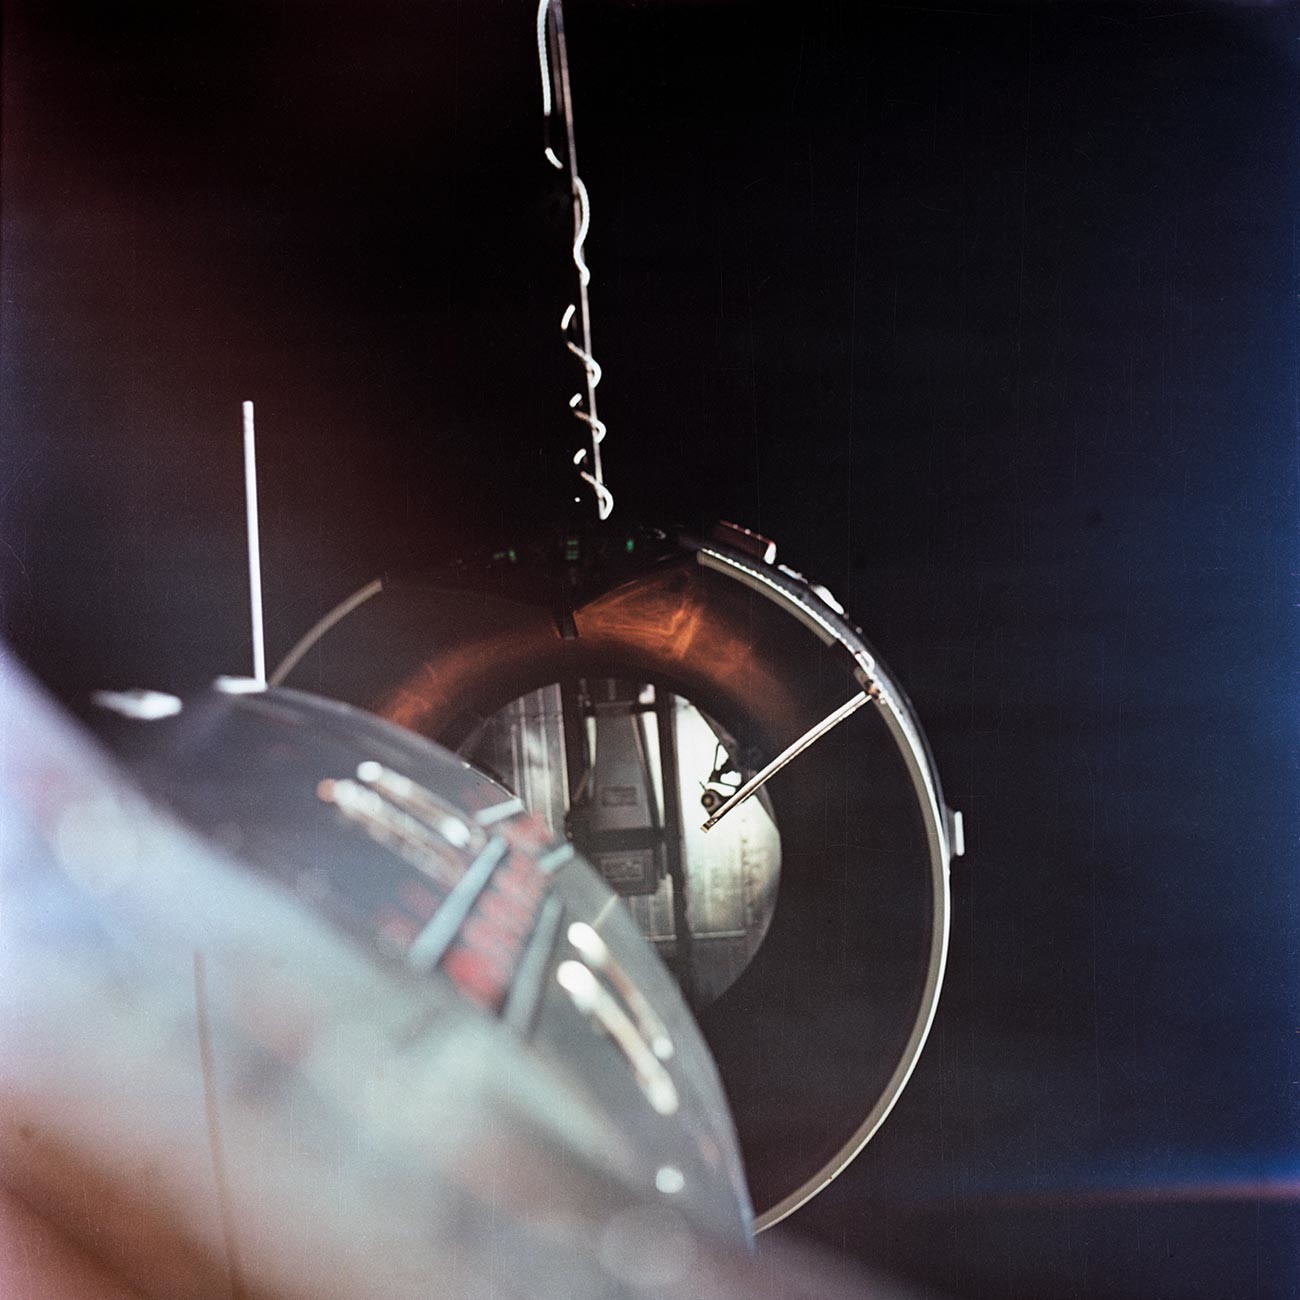 El Vehículo de Acoplamiento Agena visto desde el adaptador Gemini de la NASA. El adaptado del AGENA se encuentra a poco menos de un metro del morro de la nave (a la izquierda, abajo).